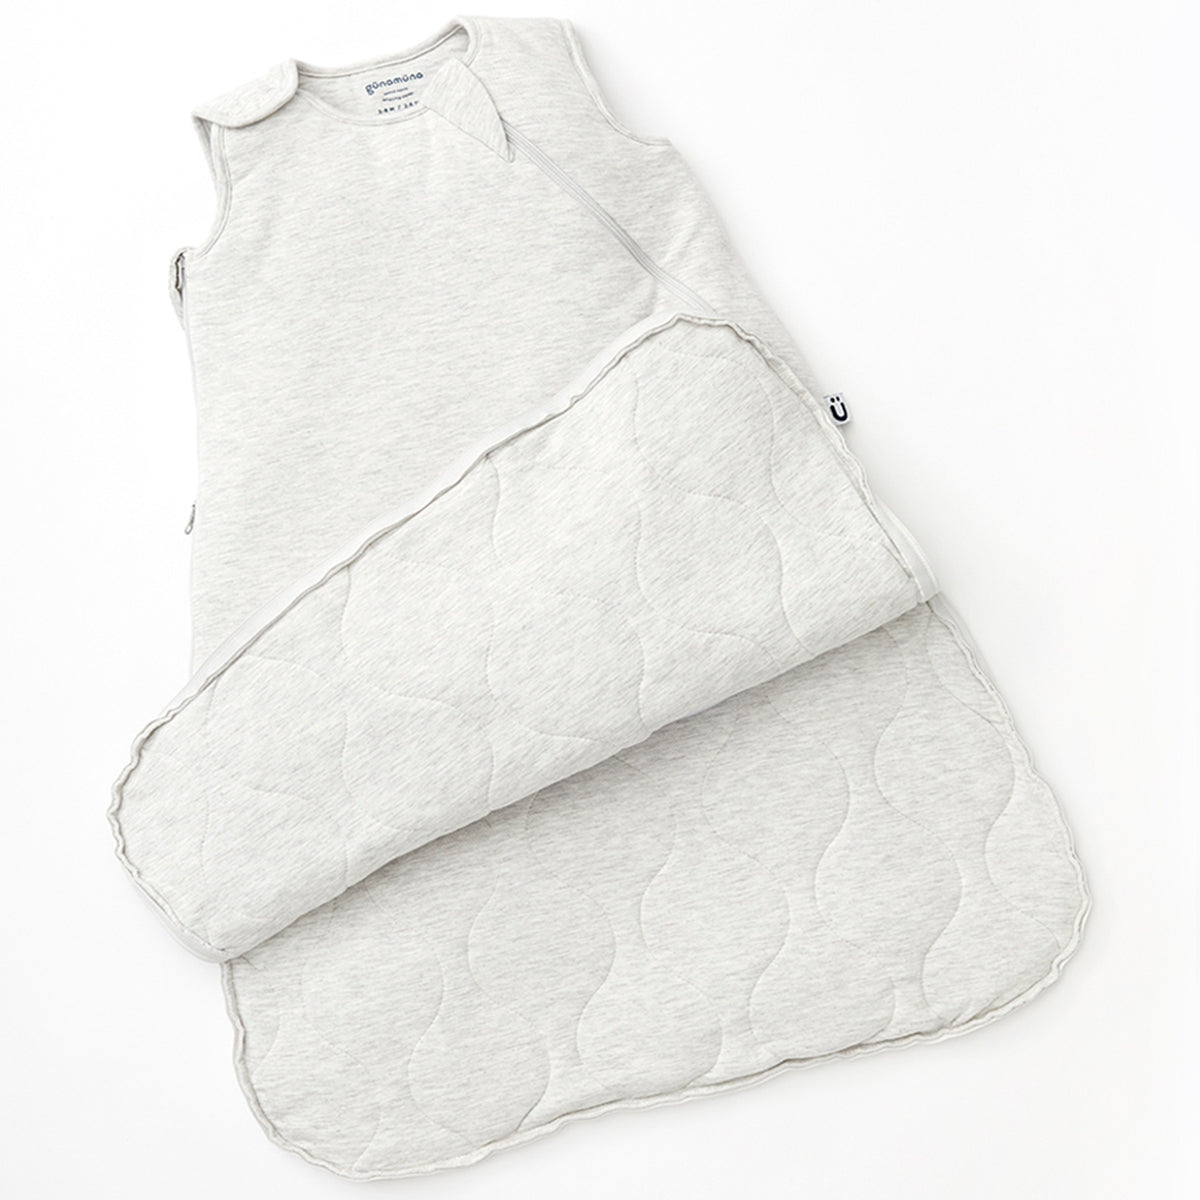 Heather Grey Sleep Bag Premium Duvet - 1.0 TOG